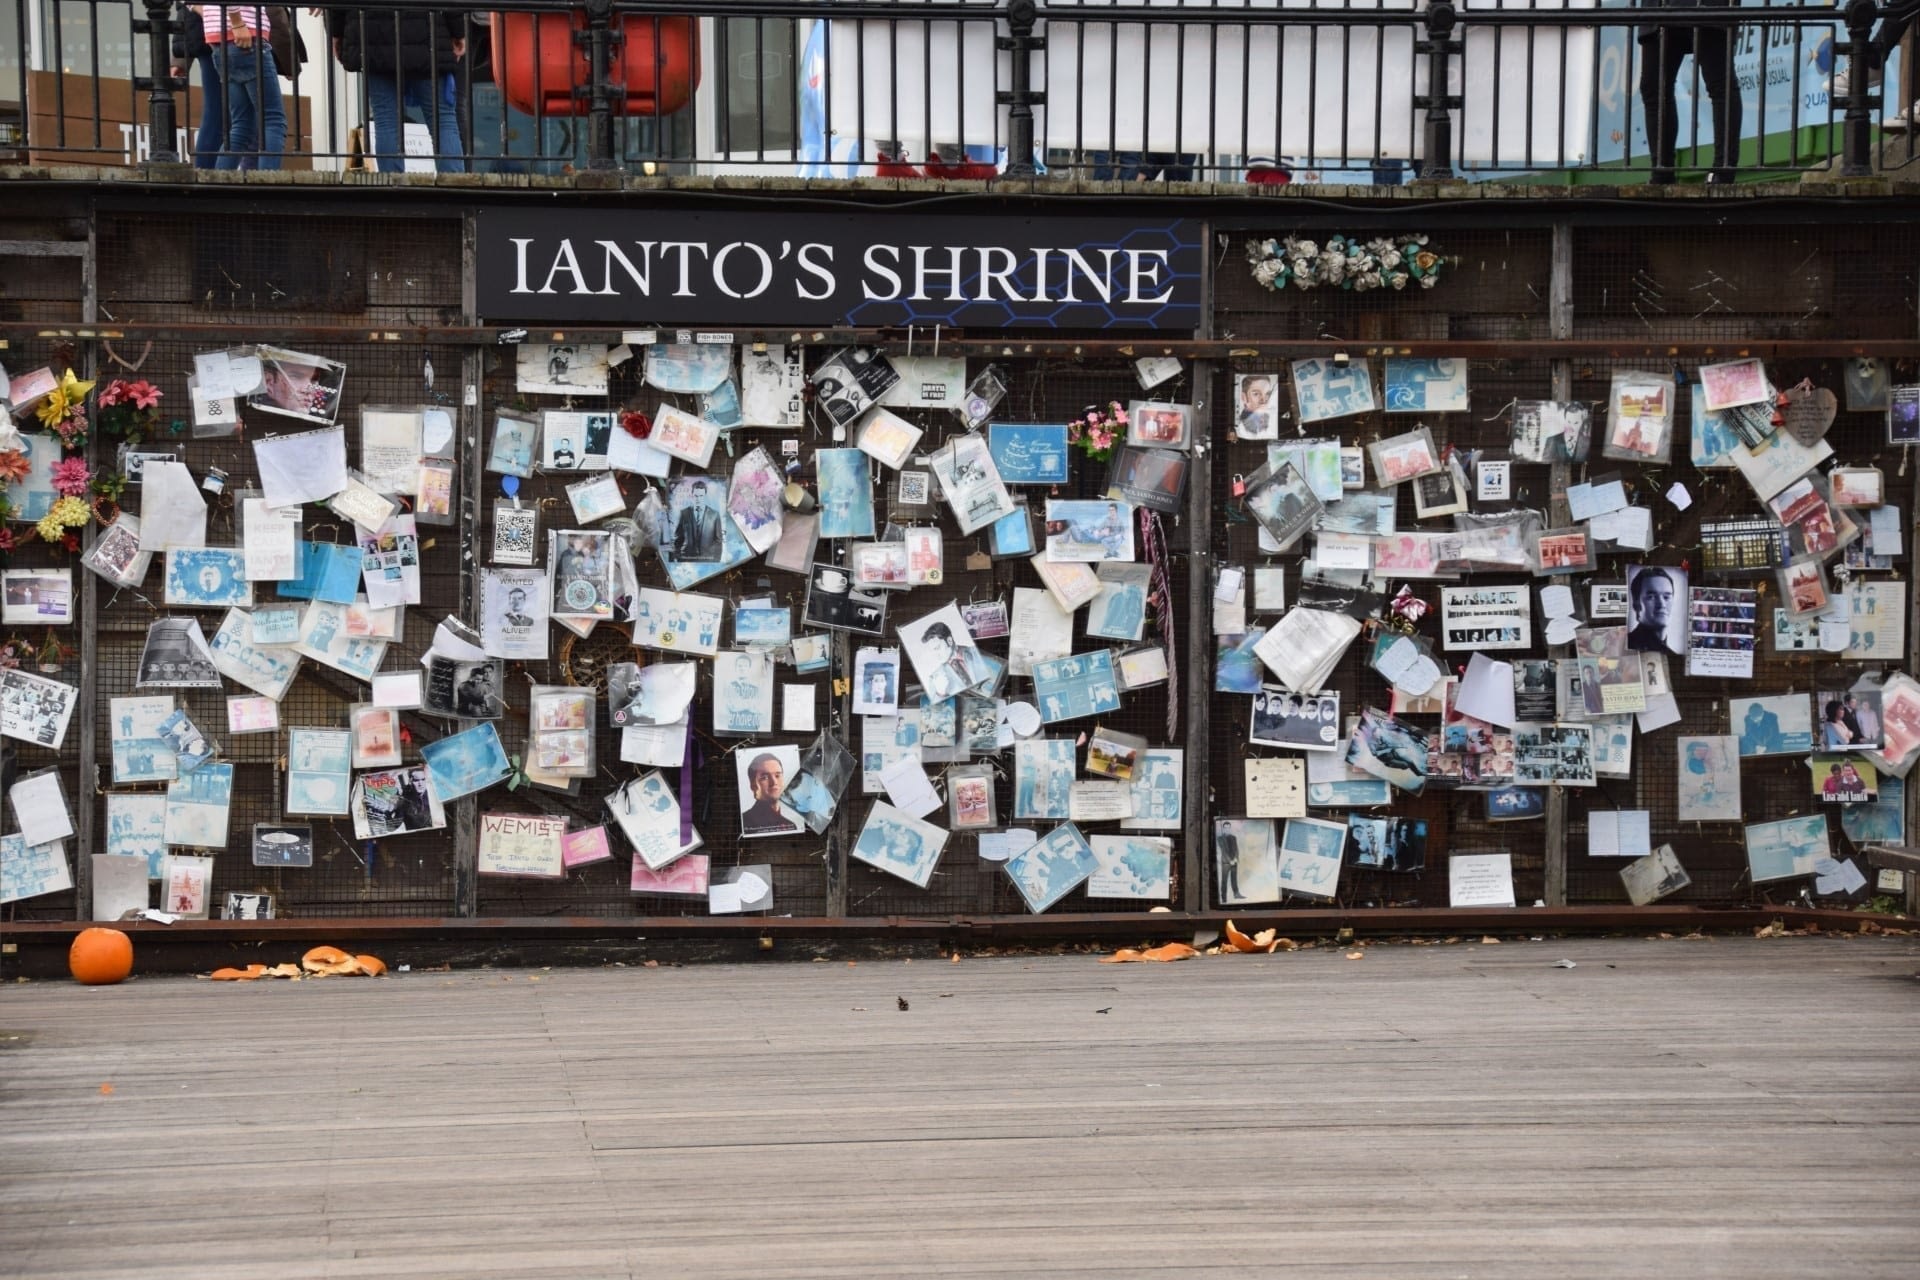 Ianto’s Shrine